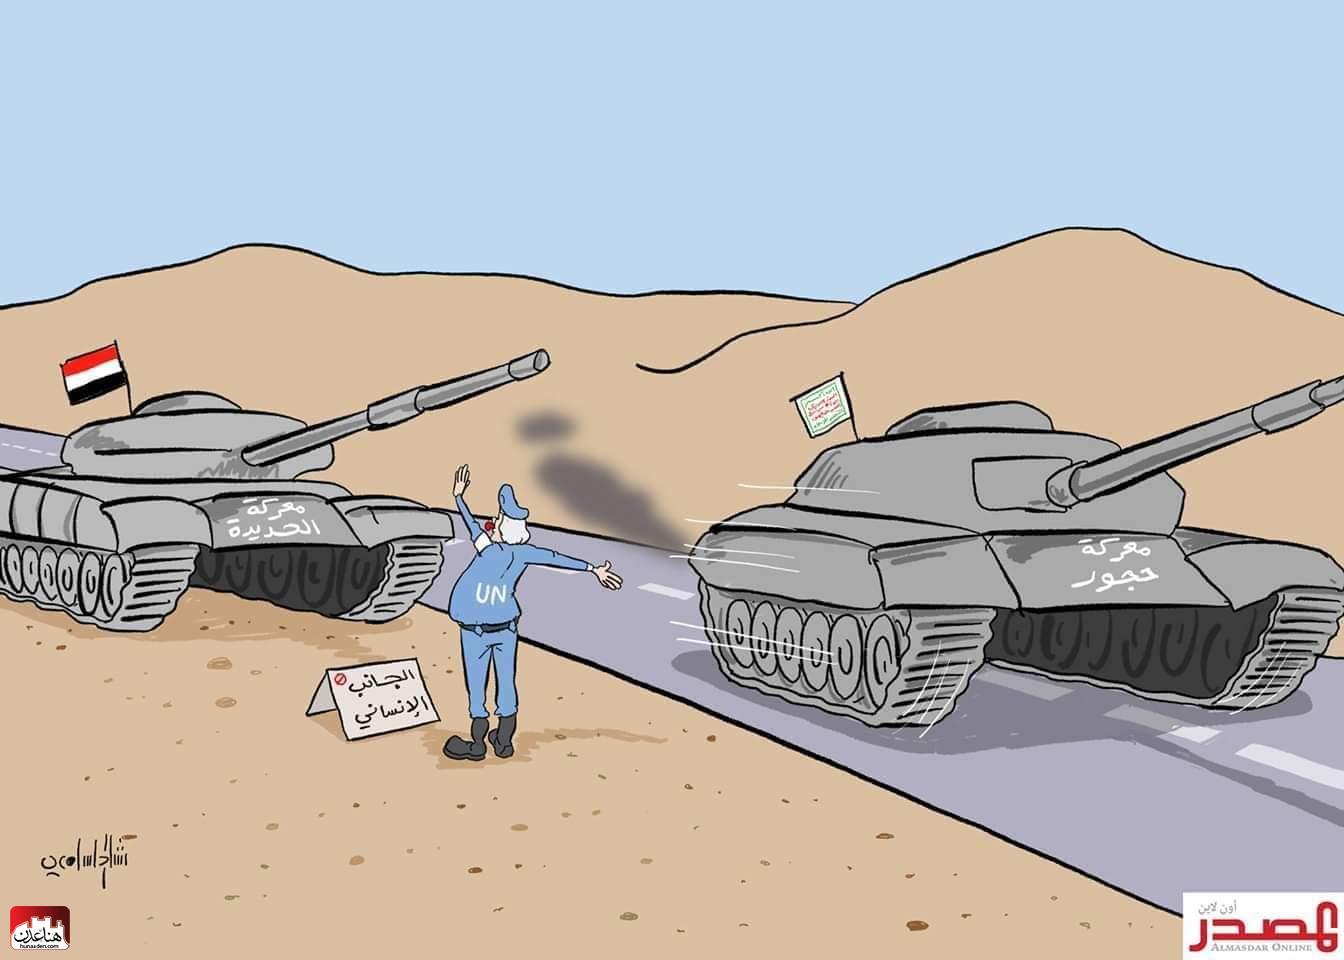 الرسام الكاريكاتيري : رشاد السامعي..يلخص بصورة هذا هو دور الأمم المتحدة في حجور